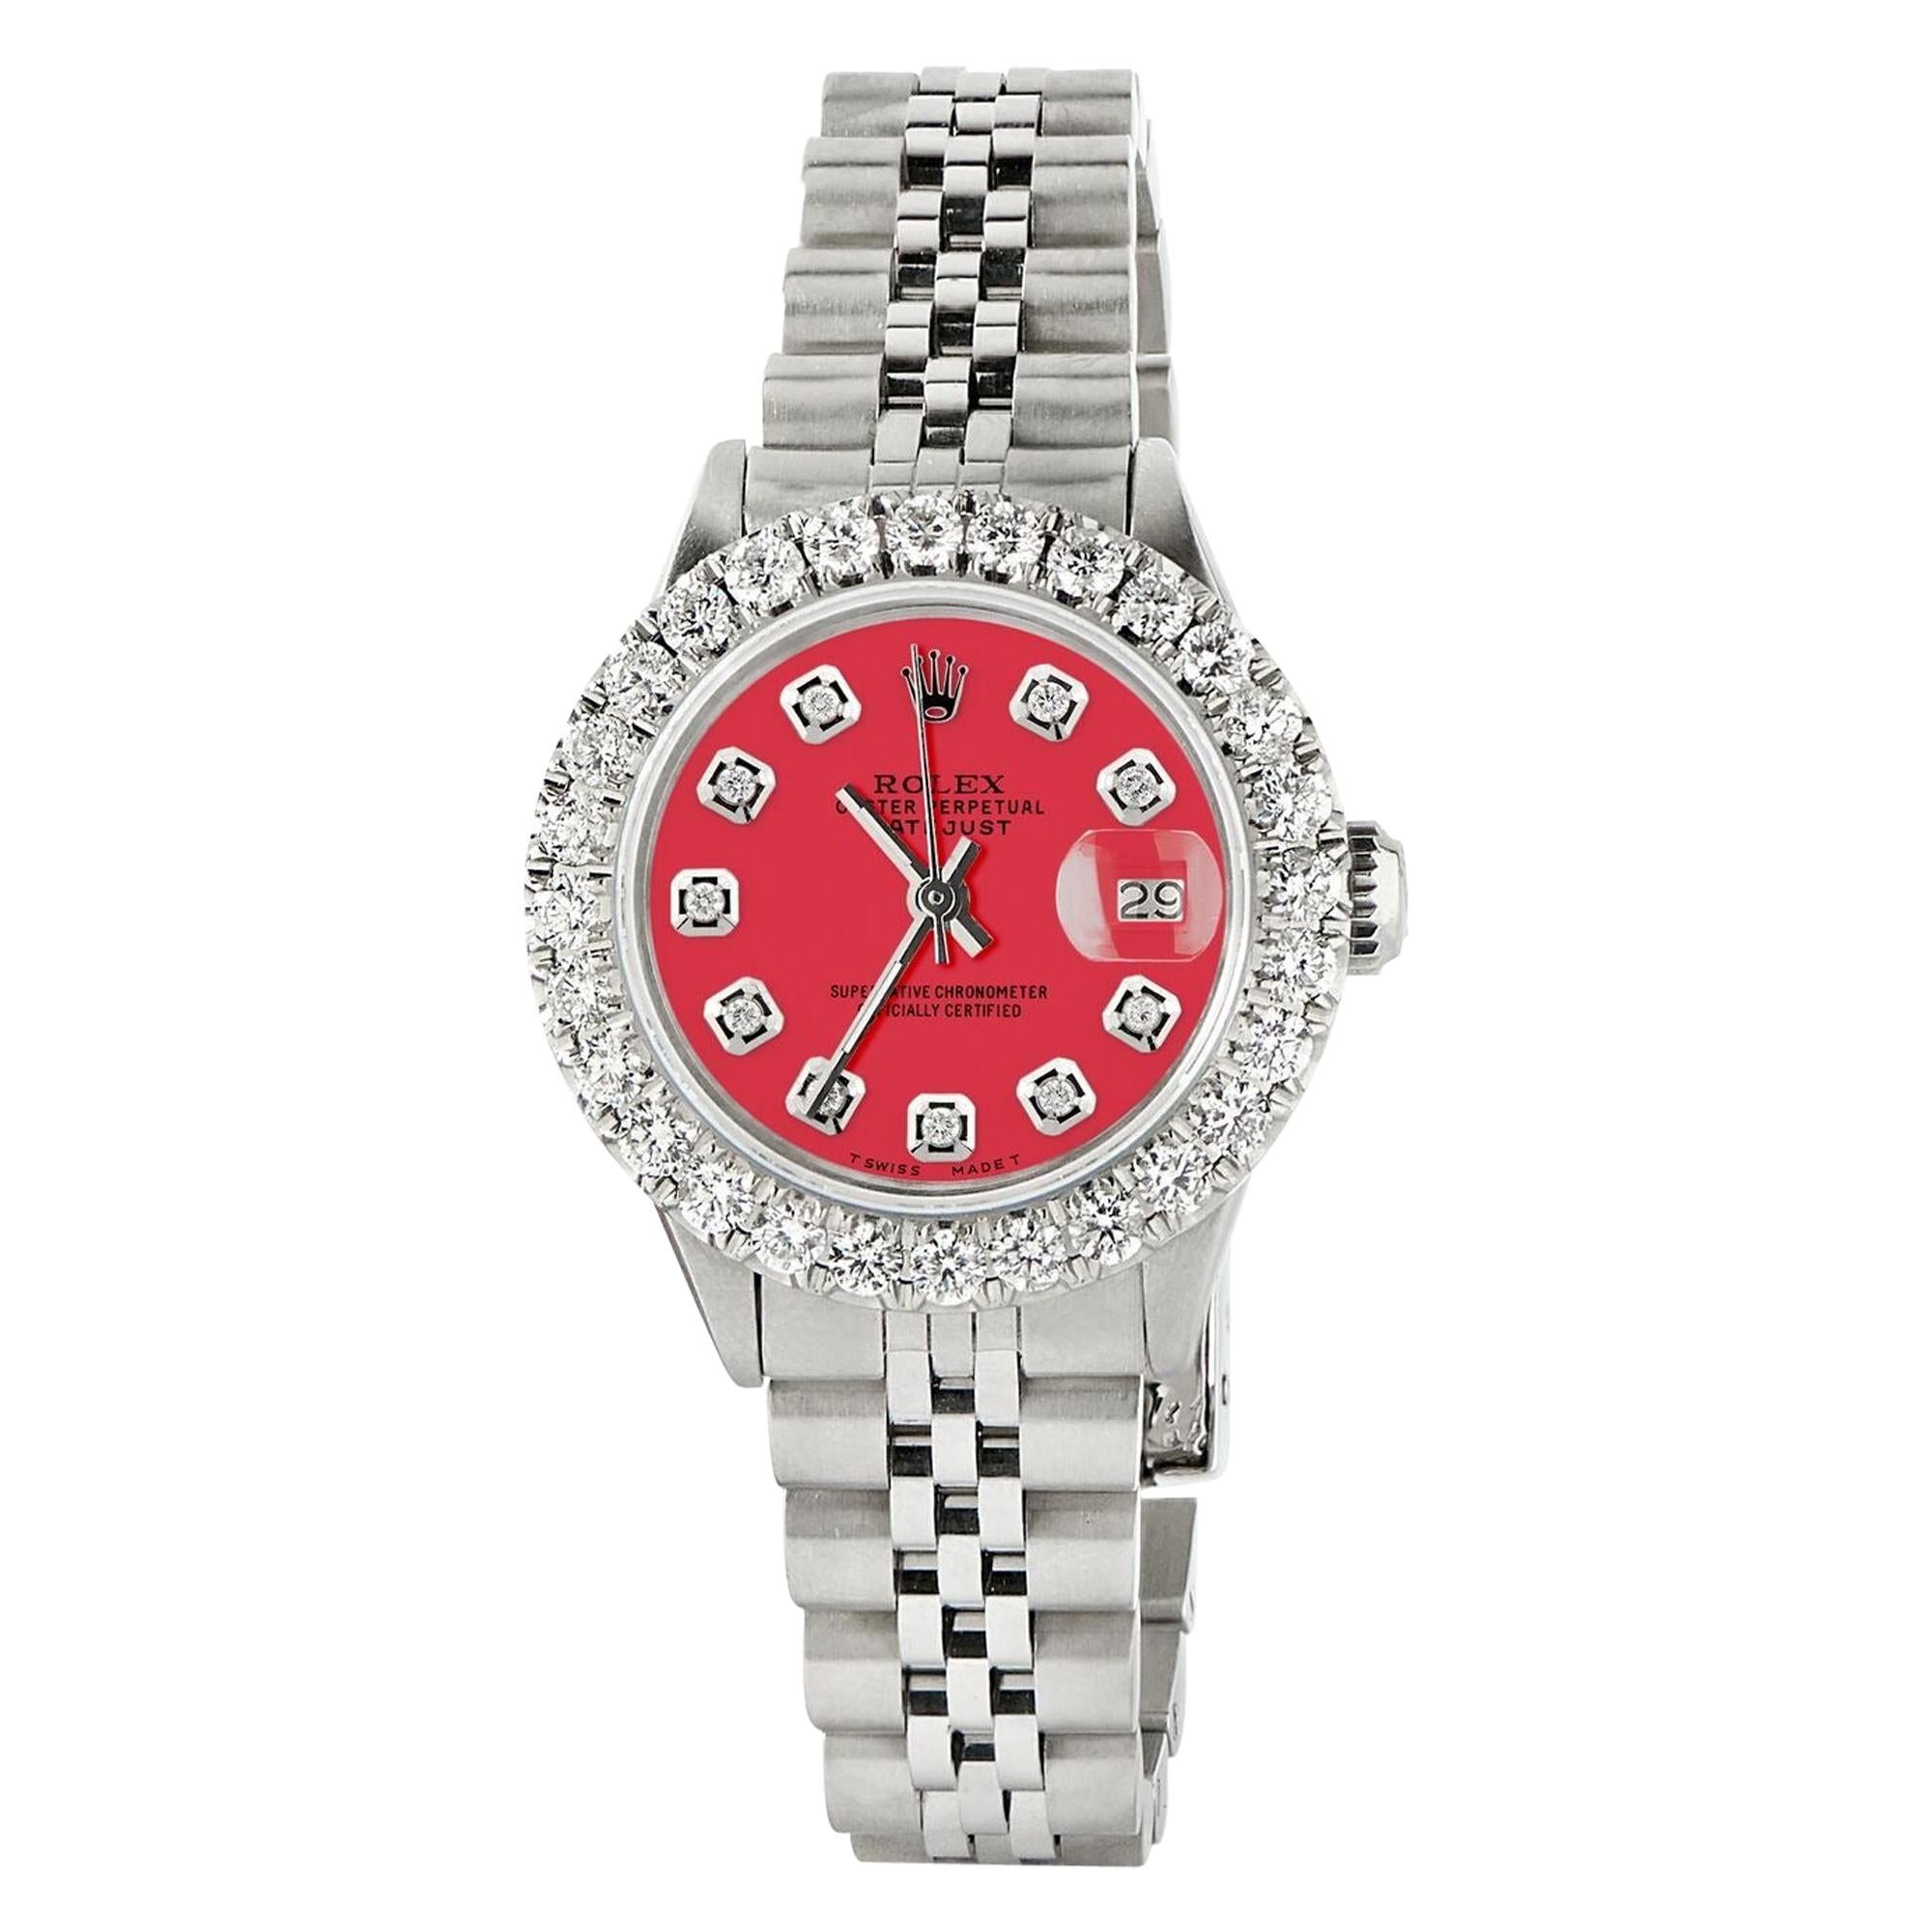 Rolex Datejust Steel Jubilee Watch 2 Carat Diamond Bezel / Scarlet Red Dial For Sale